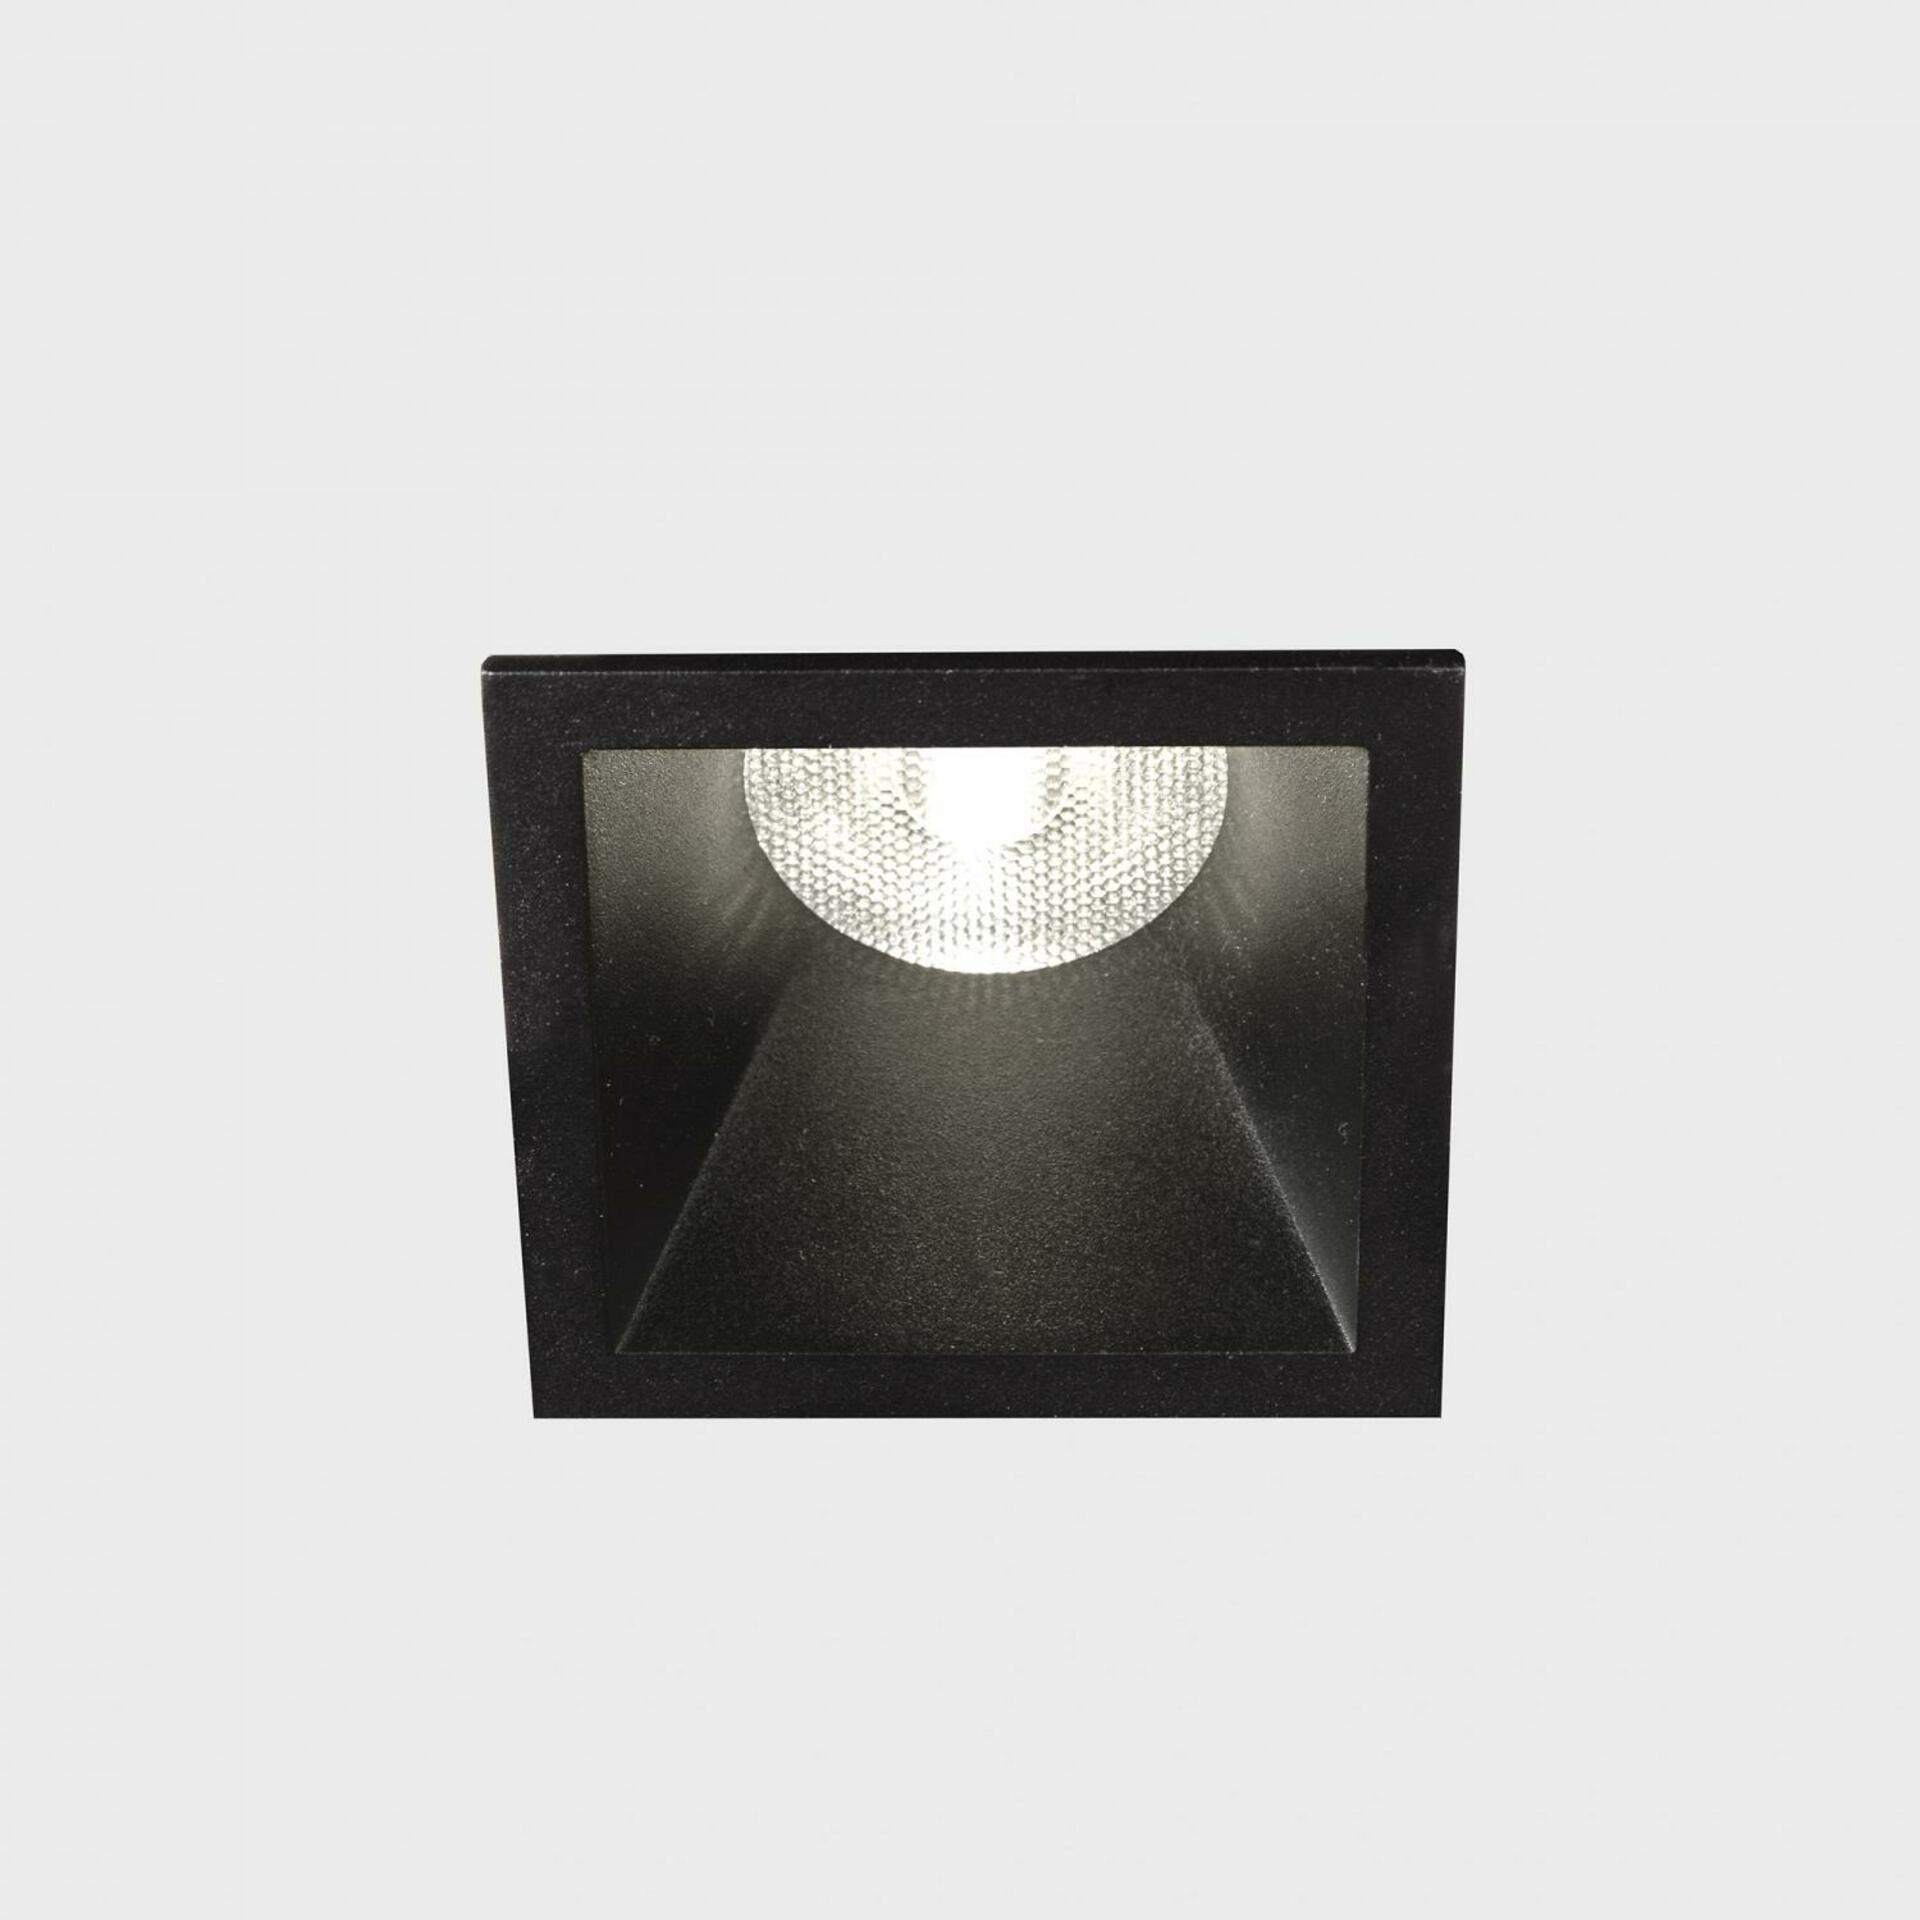 KOHL LIGHTING KOHL-Lighting VERSUS MUZZY SQ zapuštěné svítidlo s rámečkem 56x56mm černá 36° 9 W CRI 80 2700K DALI